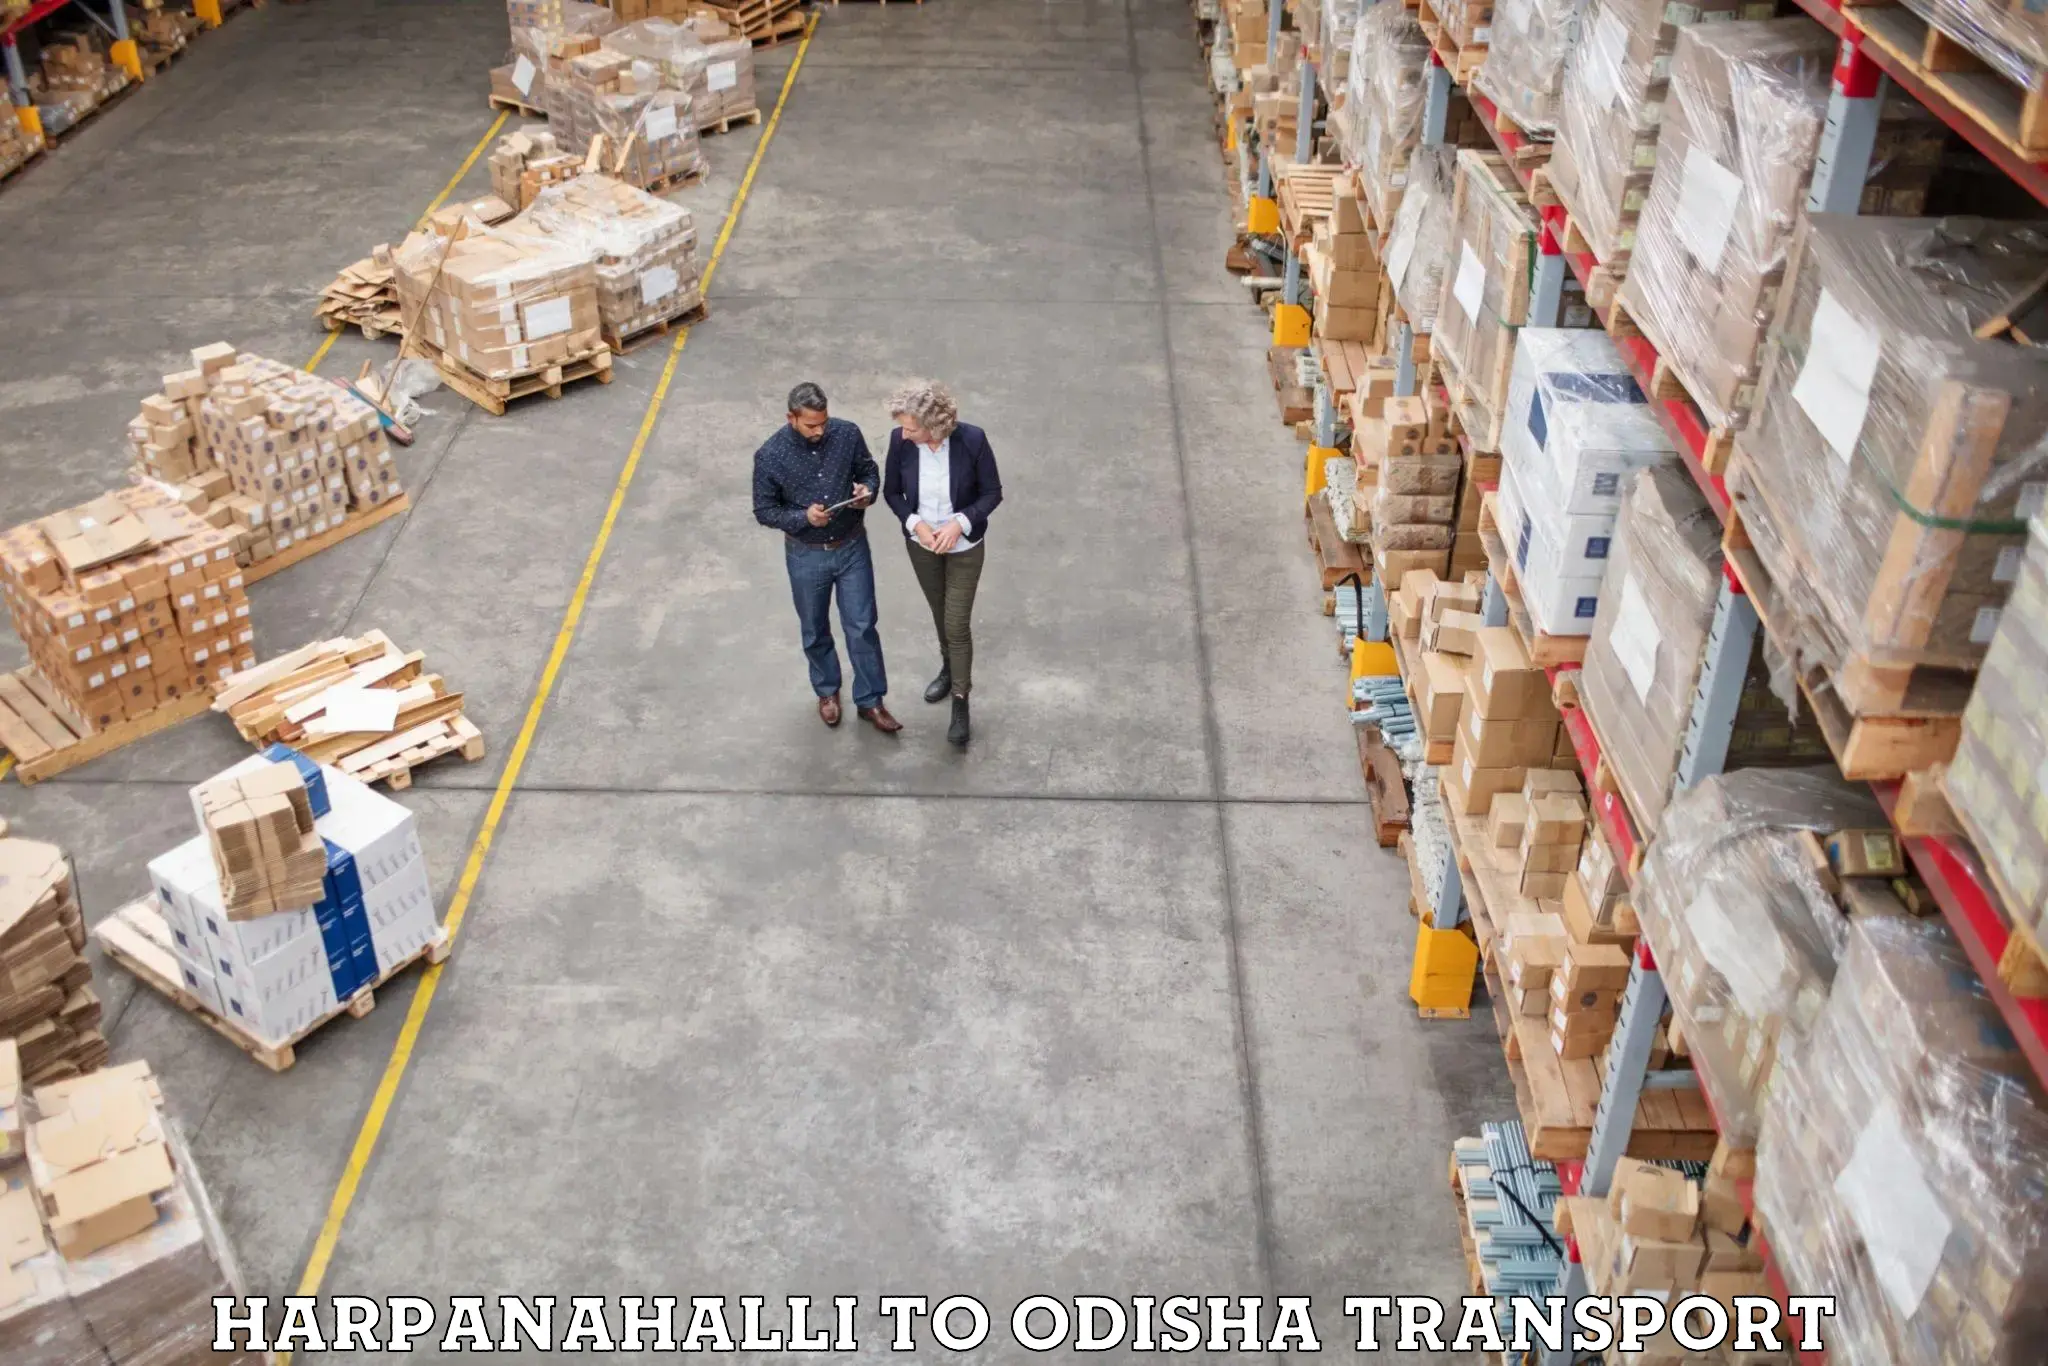 Bike shipping service Harpanahalli to Konark